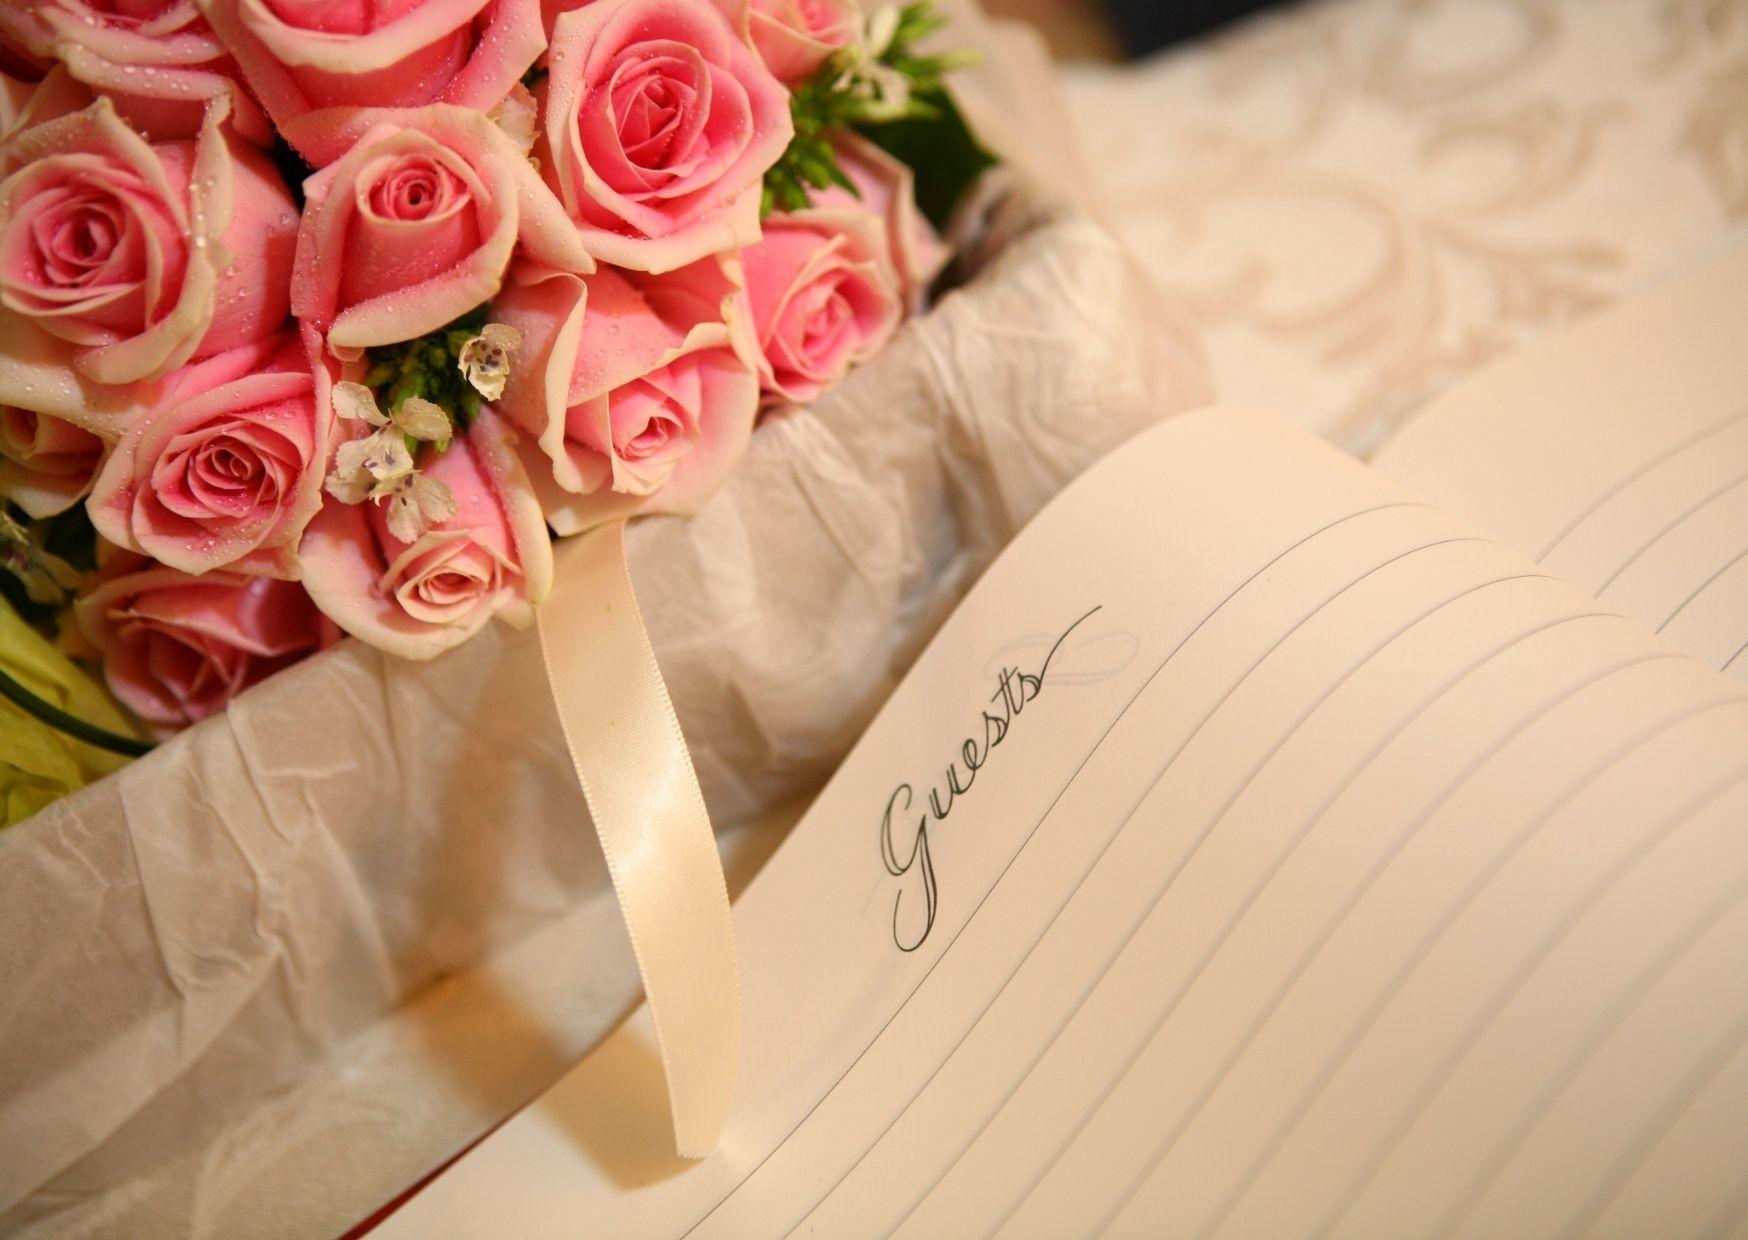 Ein Strauß rosa Rosen neben einem Notizbuch.